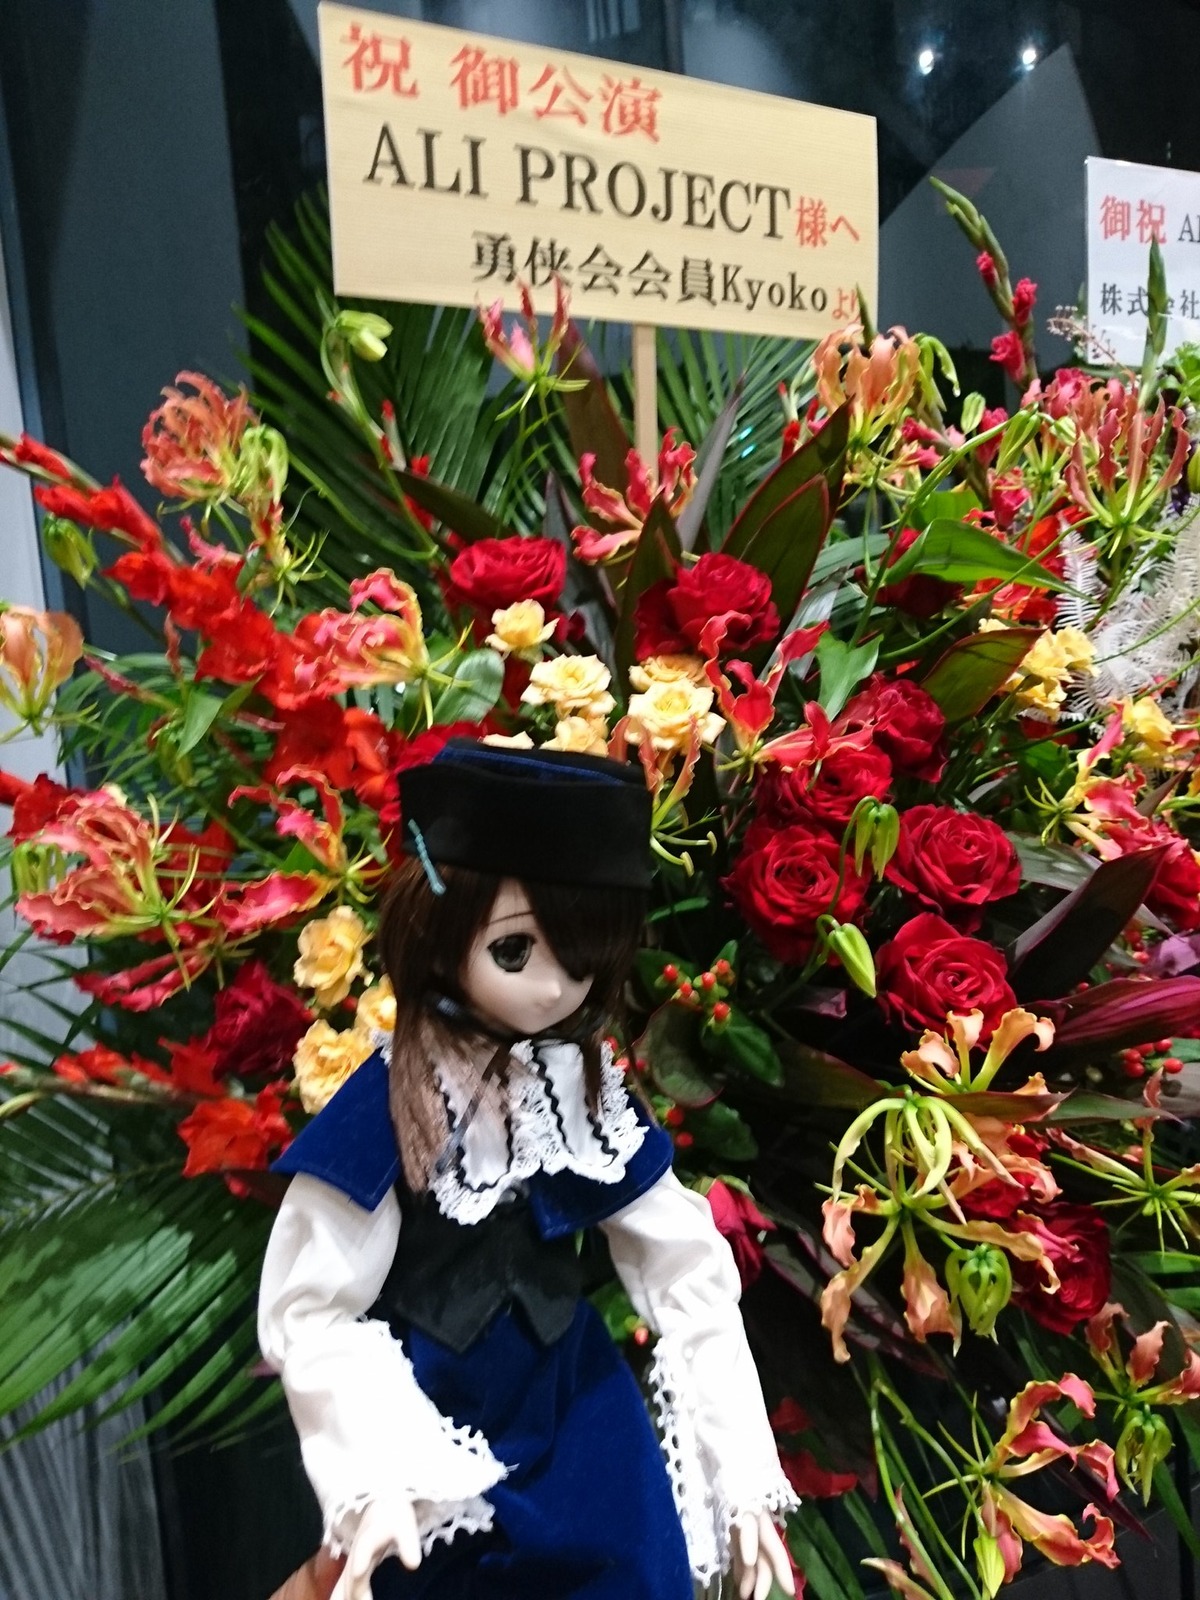 1girl black_eyes black_hair doll dress flower hair_over_one_eye hat plant red_flower red_rose rose solo souseiseki